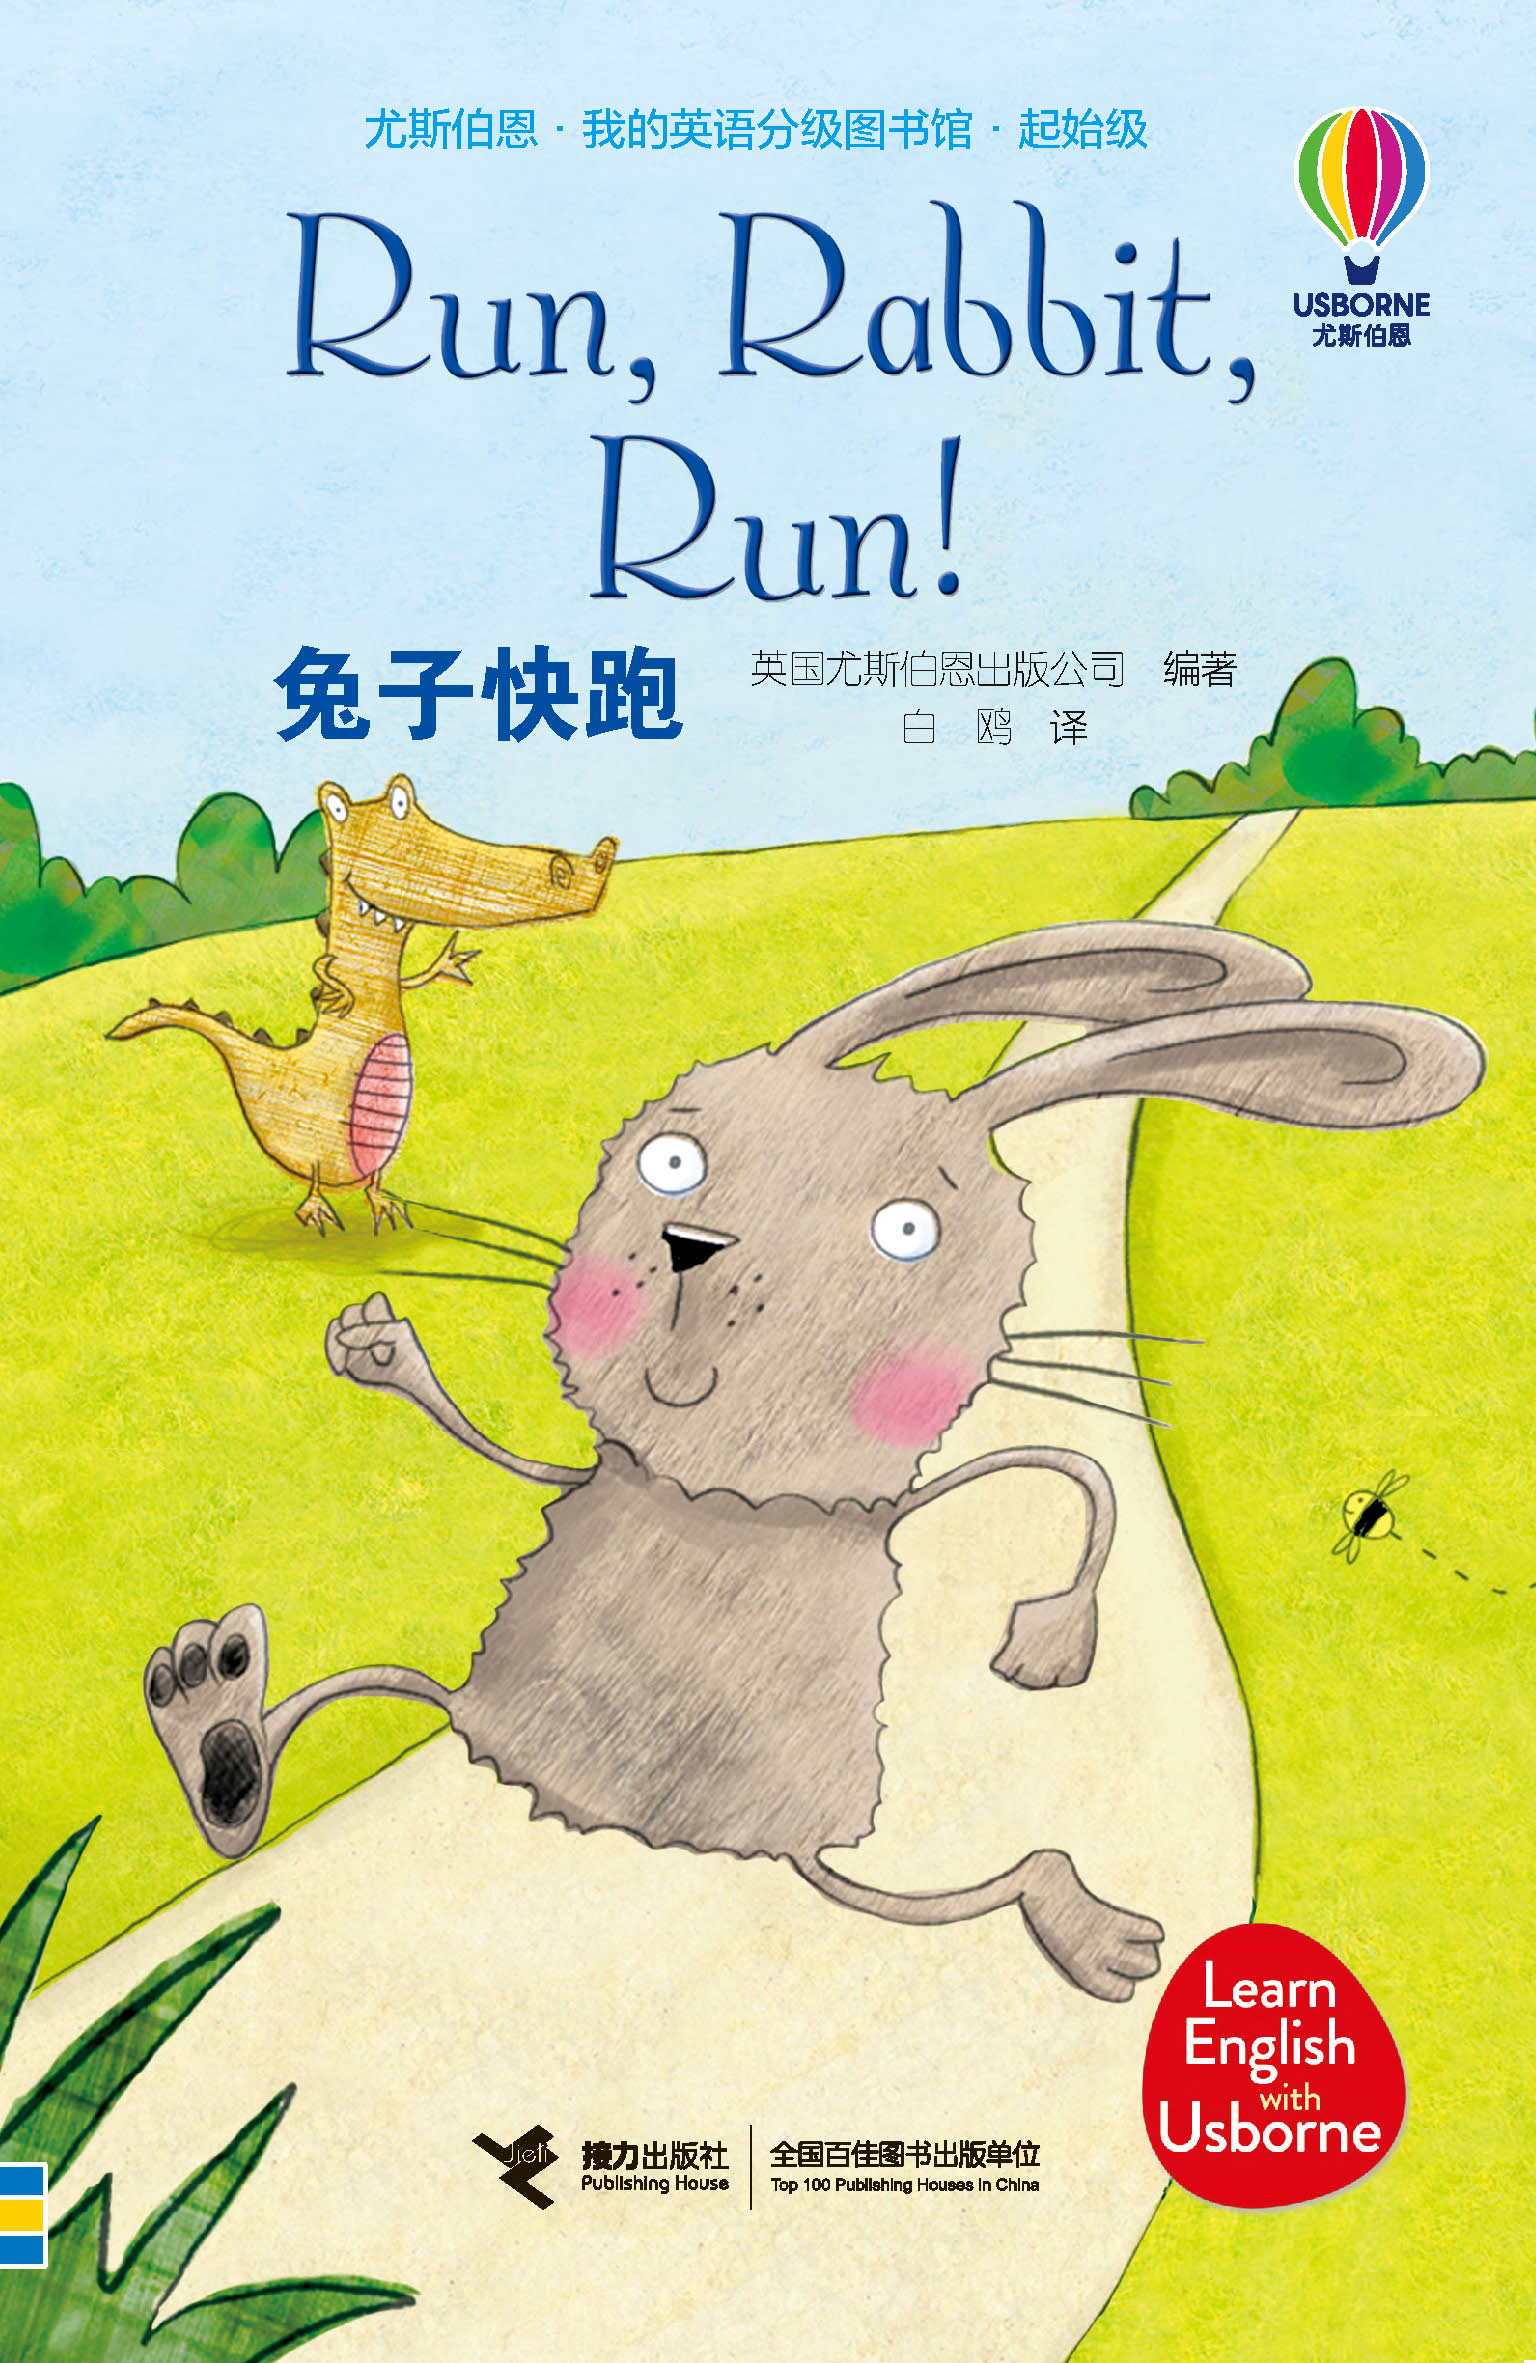 尤斯伯恩·我的英语分级图书馆·起始级:尤斯伯恩·我的英语分级图书馆·起始级·兔子快跑